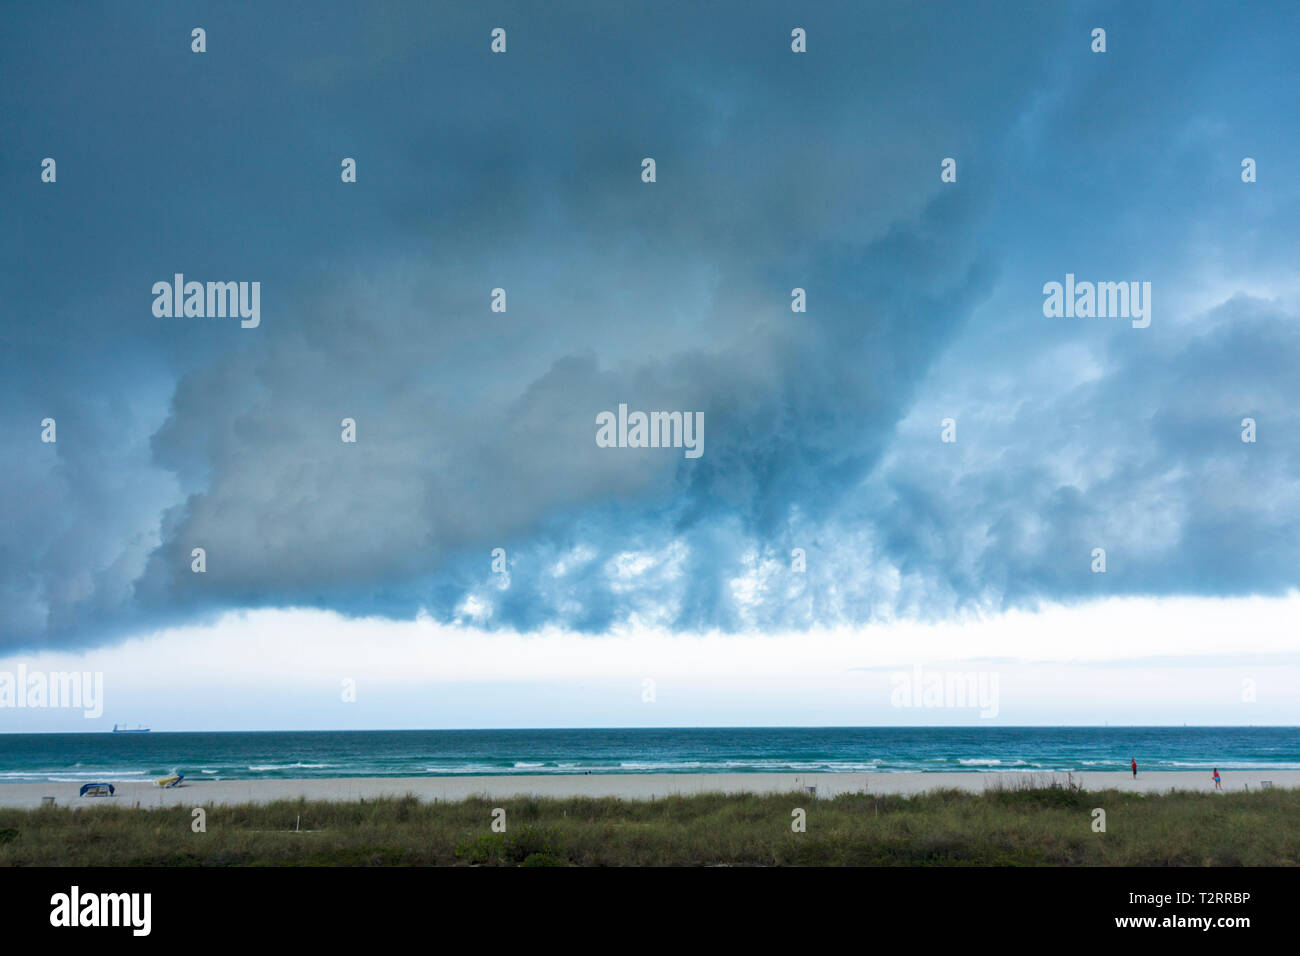 Miami Beach Florida,Océano Atlántico,agua,frente frío,tiempo,tormenta,tormenta,gris,nubes,nublado,amenazante,ominoso,cielo oscuro,FL090417029 Foto de stock